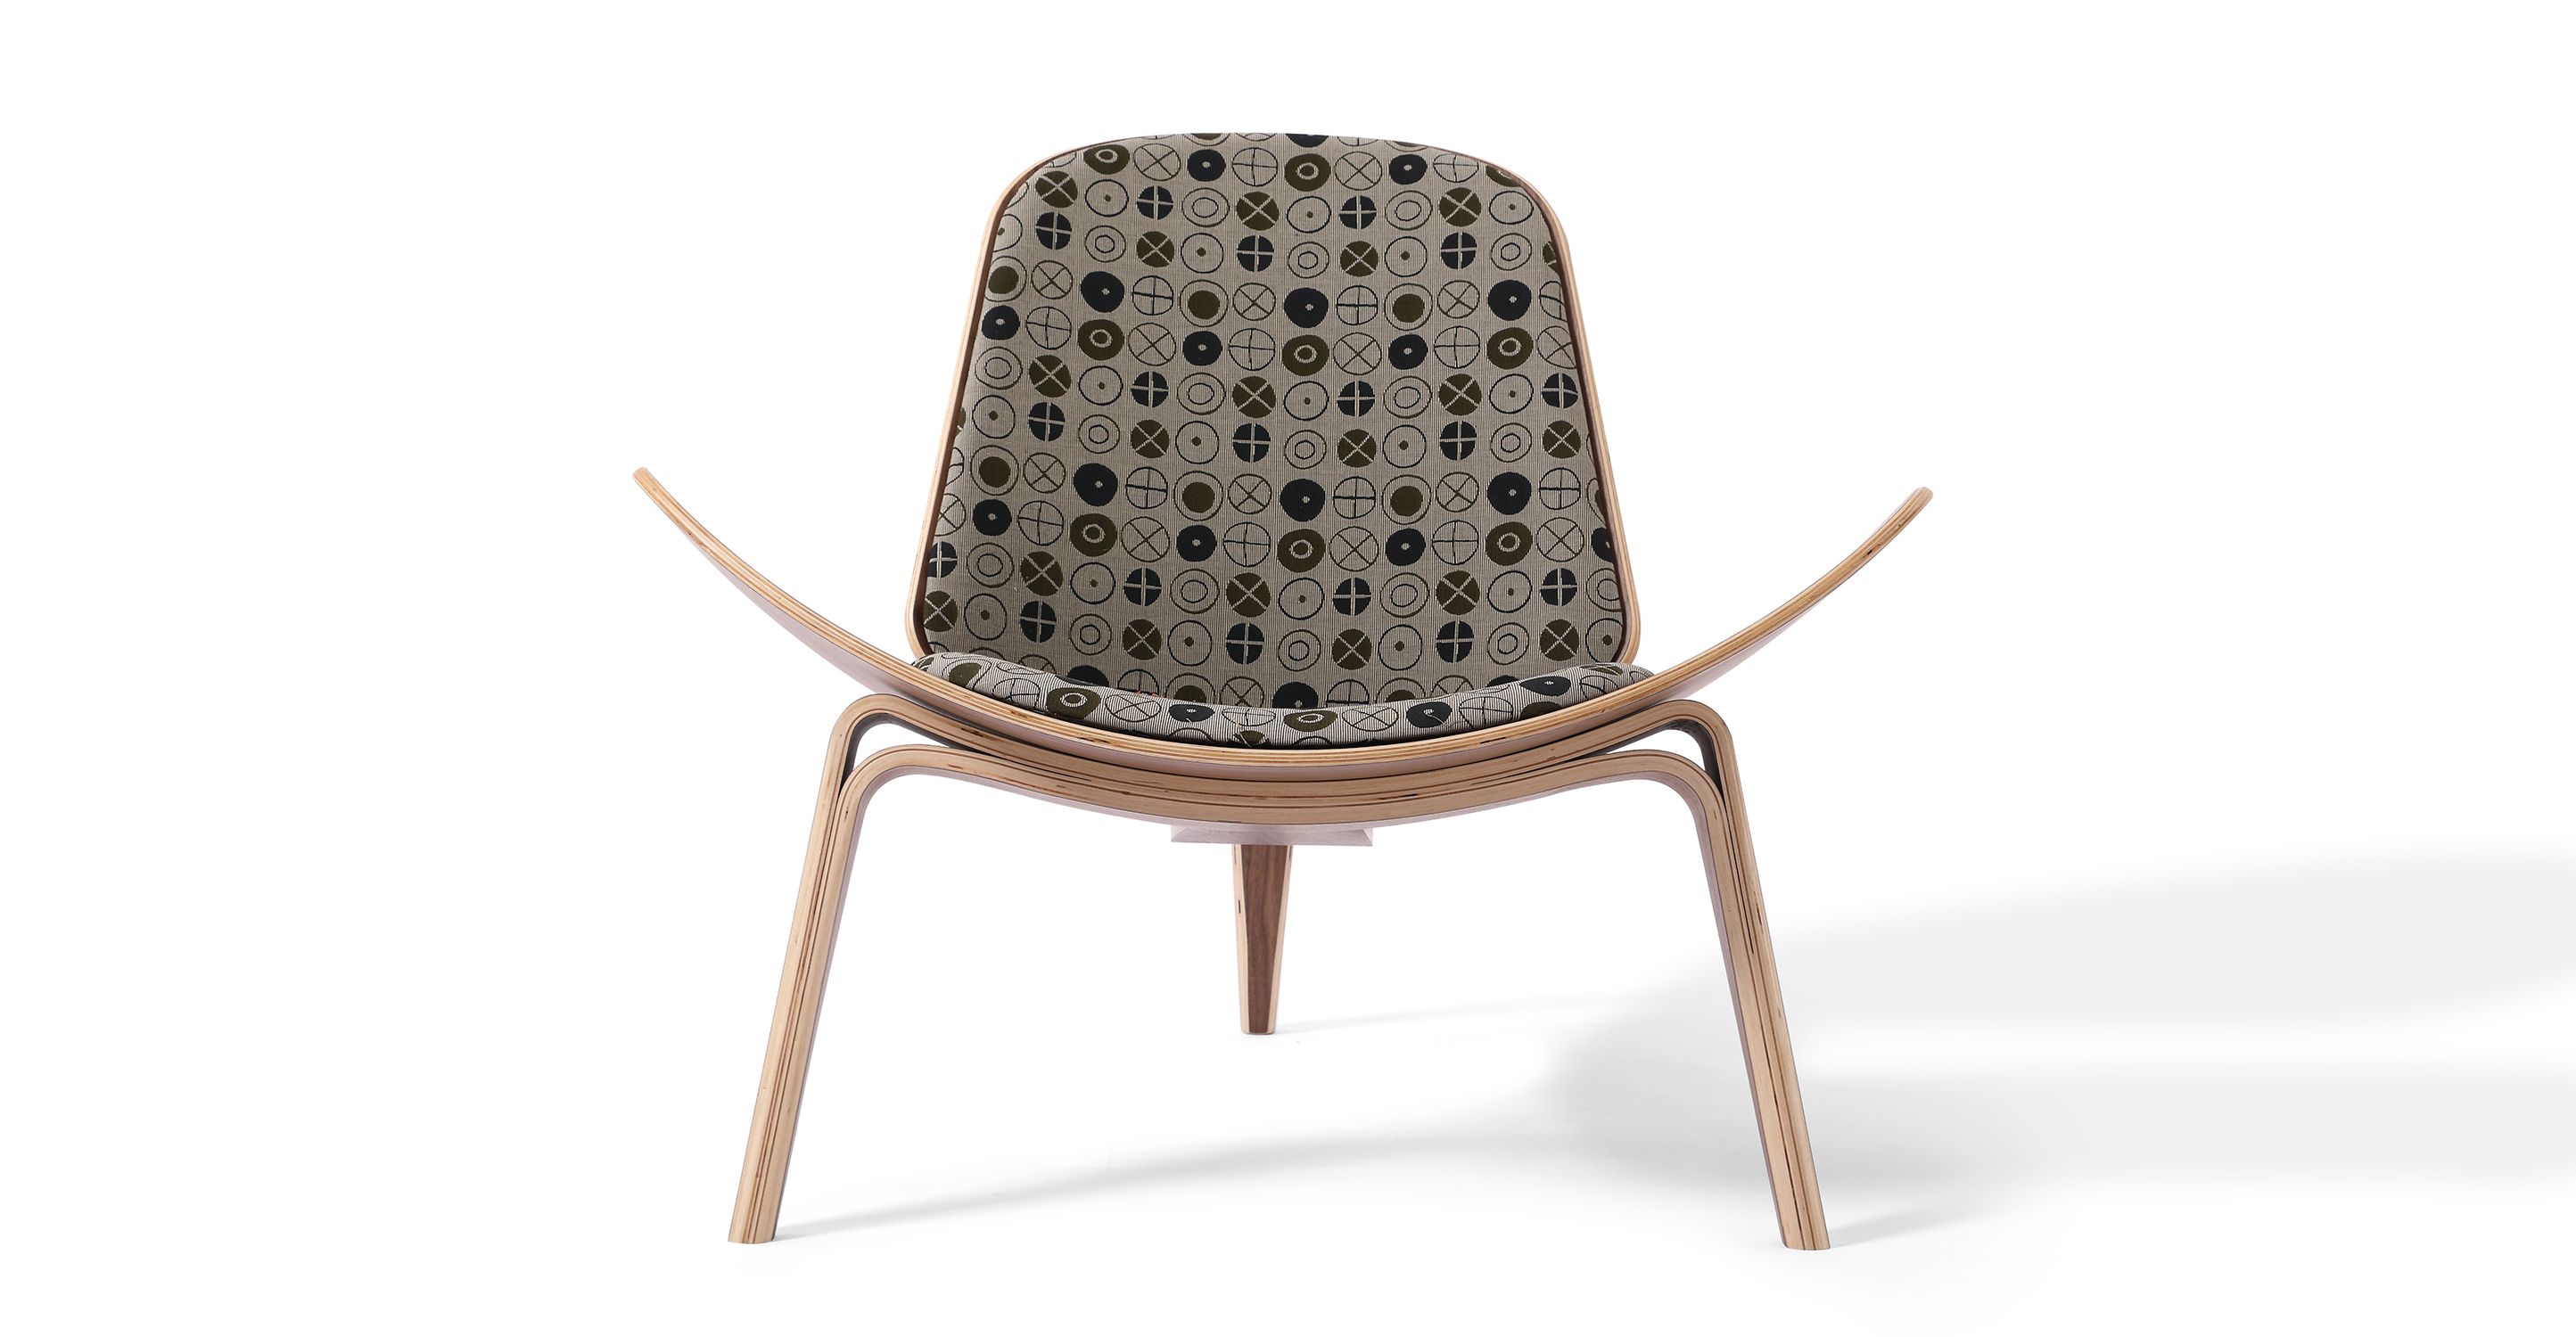 Kardiel Tripod 36 Fabric Chair, Walnut/Circles Fatigue